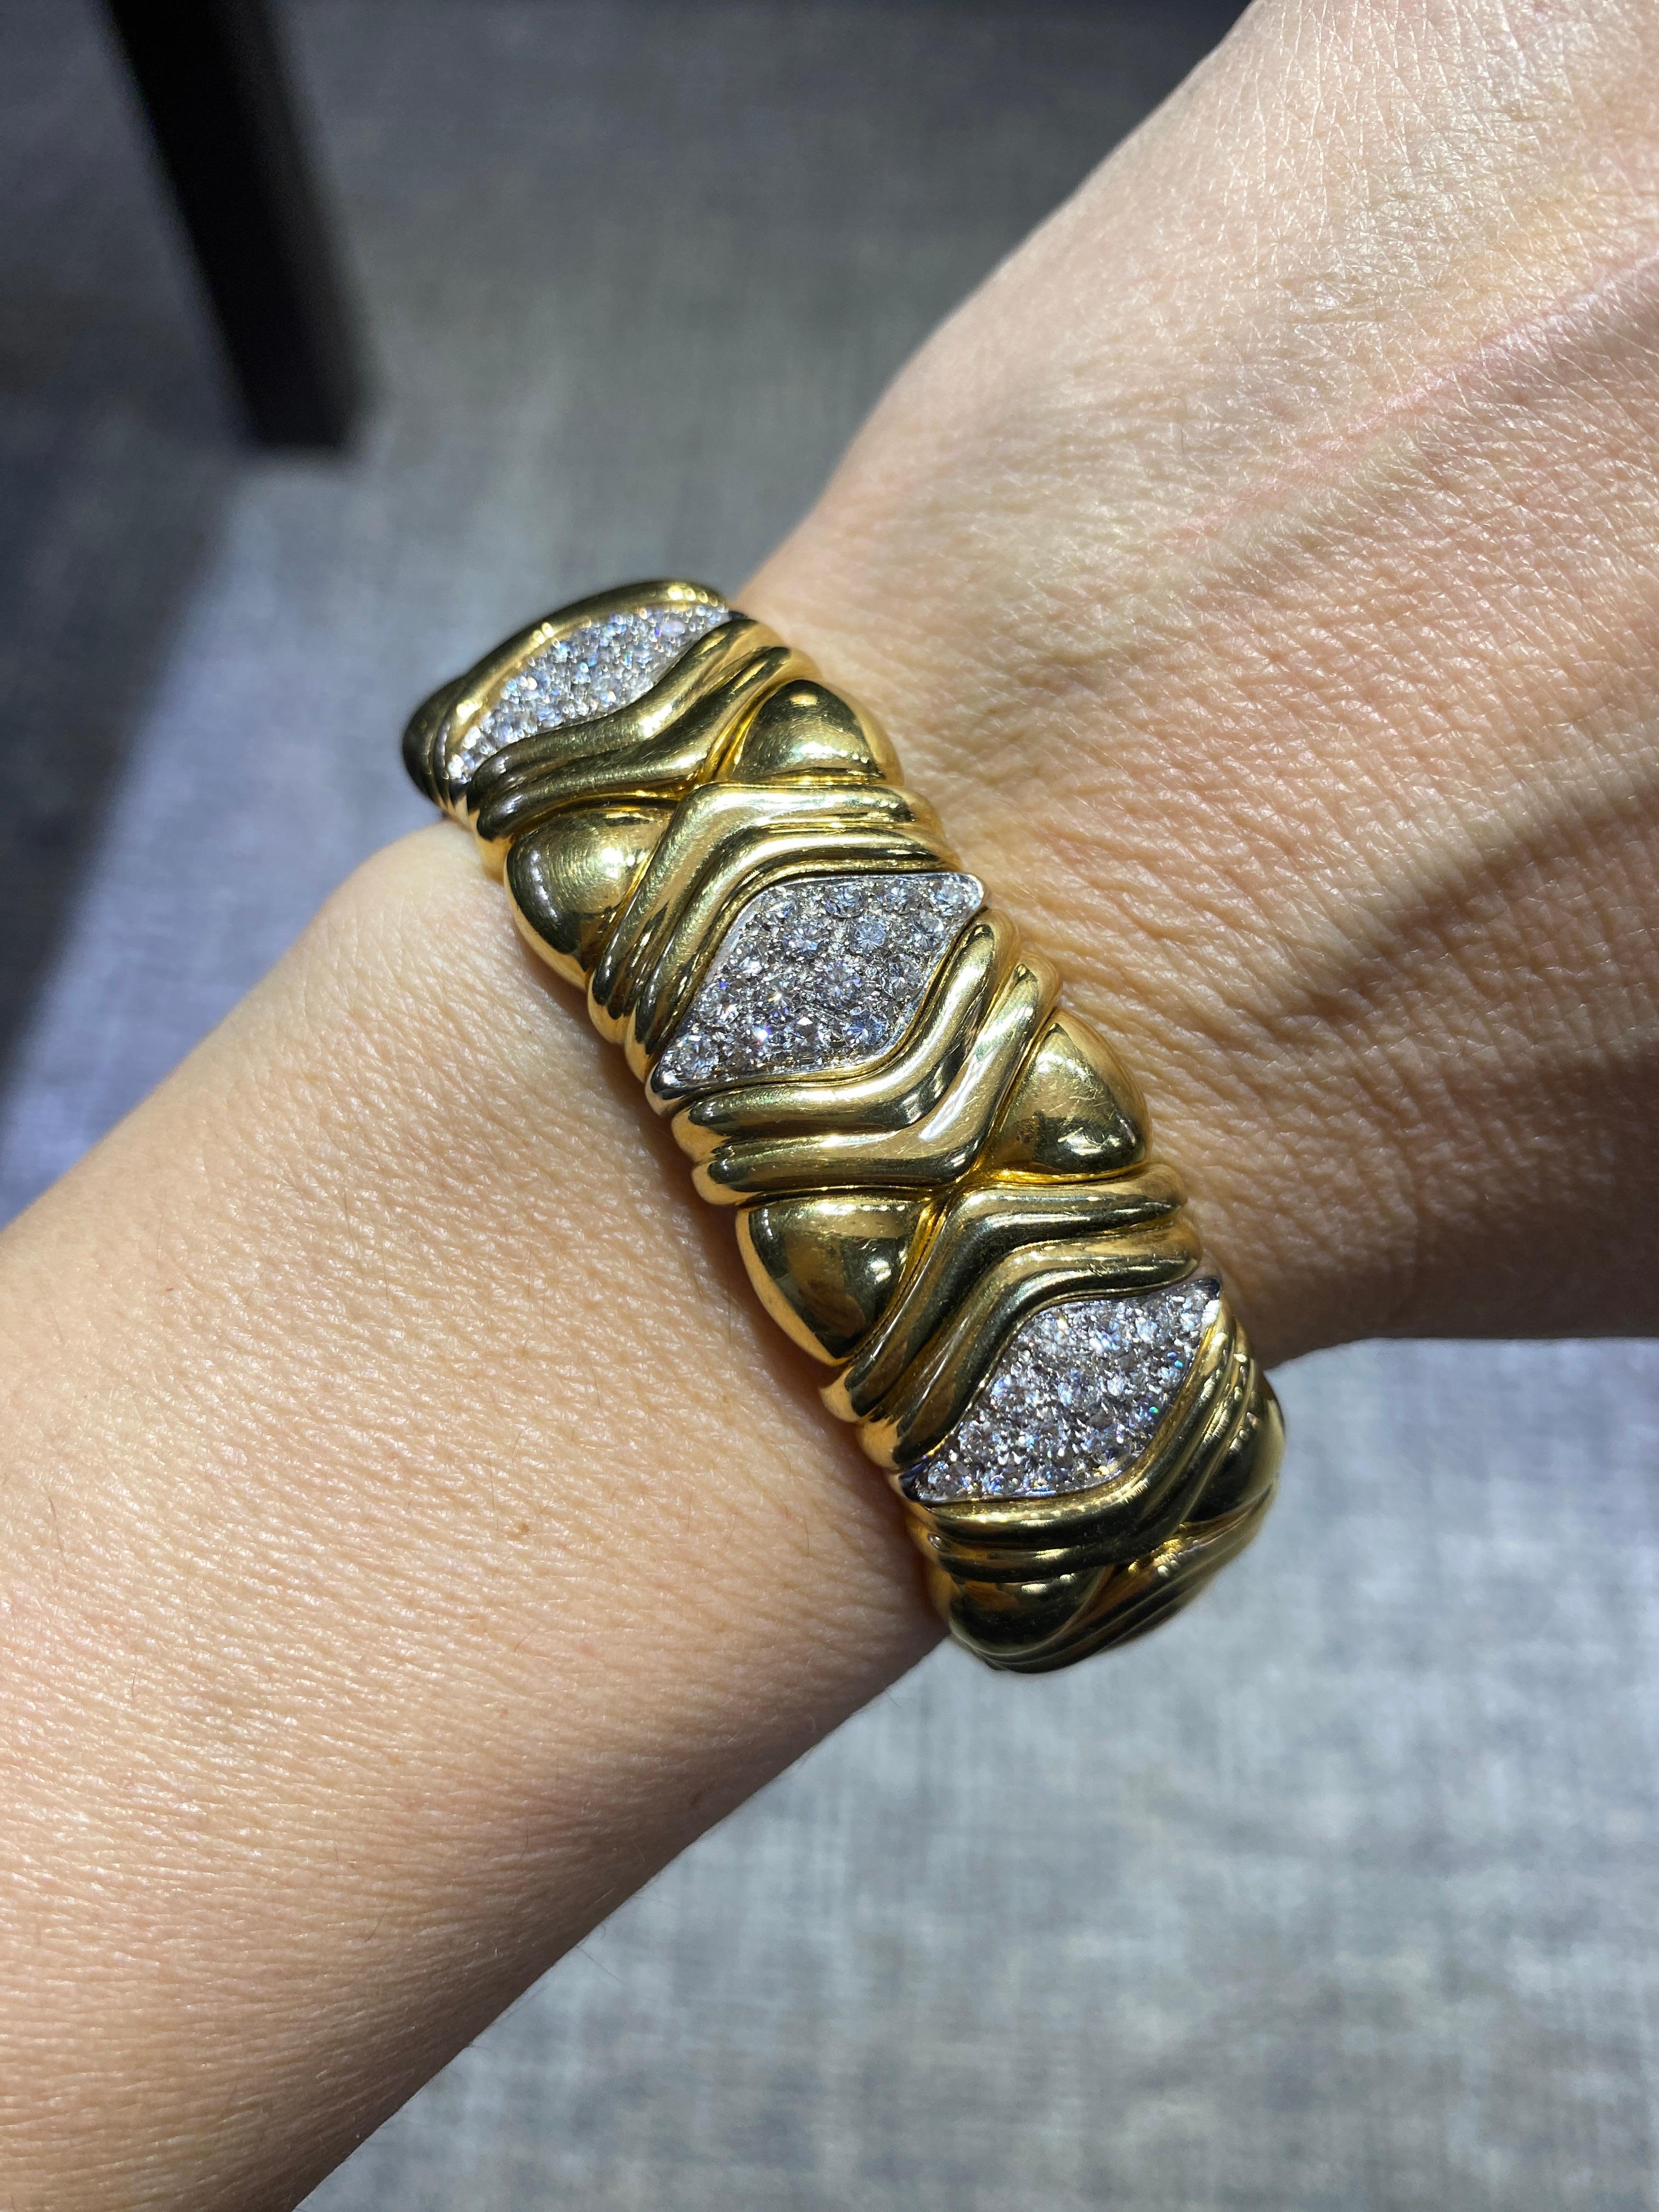 Diese Gold- und Diamantenmanschette von Wempe aus den 1980er Jahren ist ein schweres Stück und sehr angenehm zu tragen. Sie dehnt sich aus, um das Handgelenk einzuschließen, und liegt eng an. Es ist ein wunderschön gemachtes Stück. 